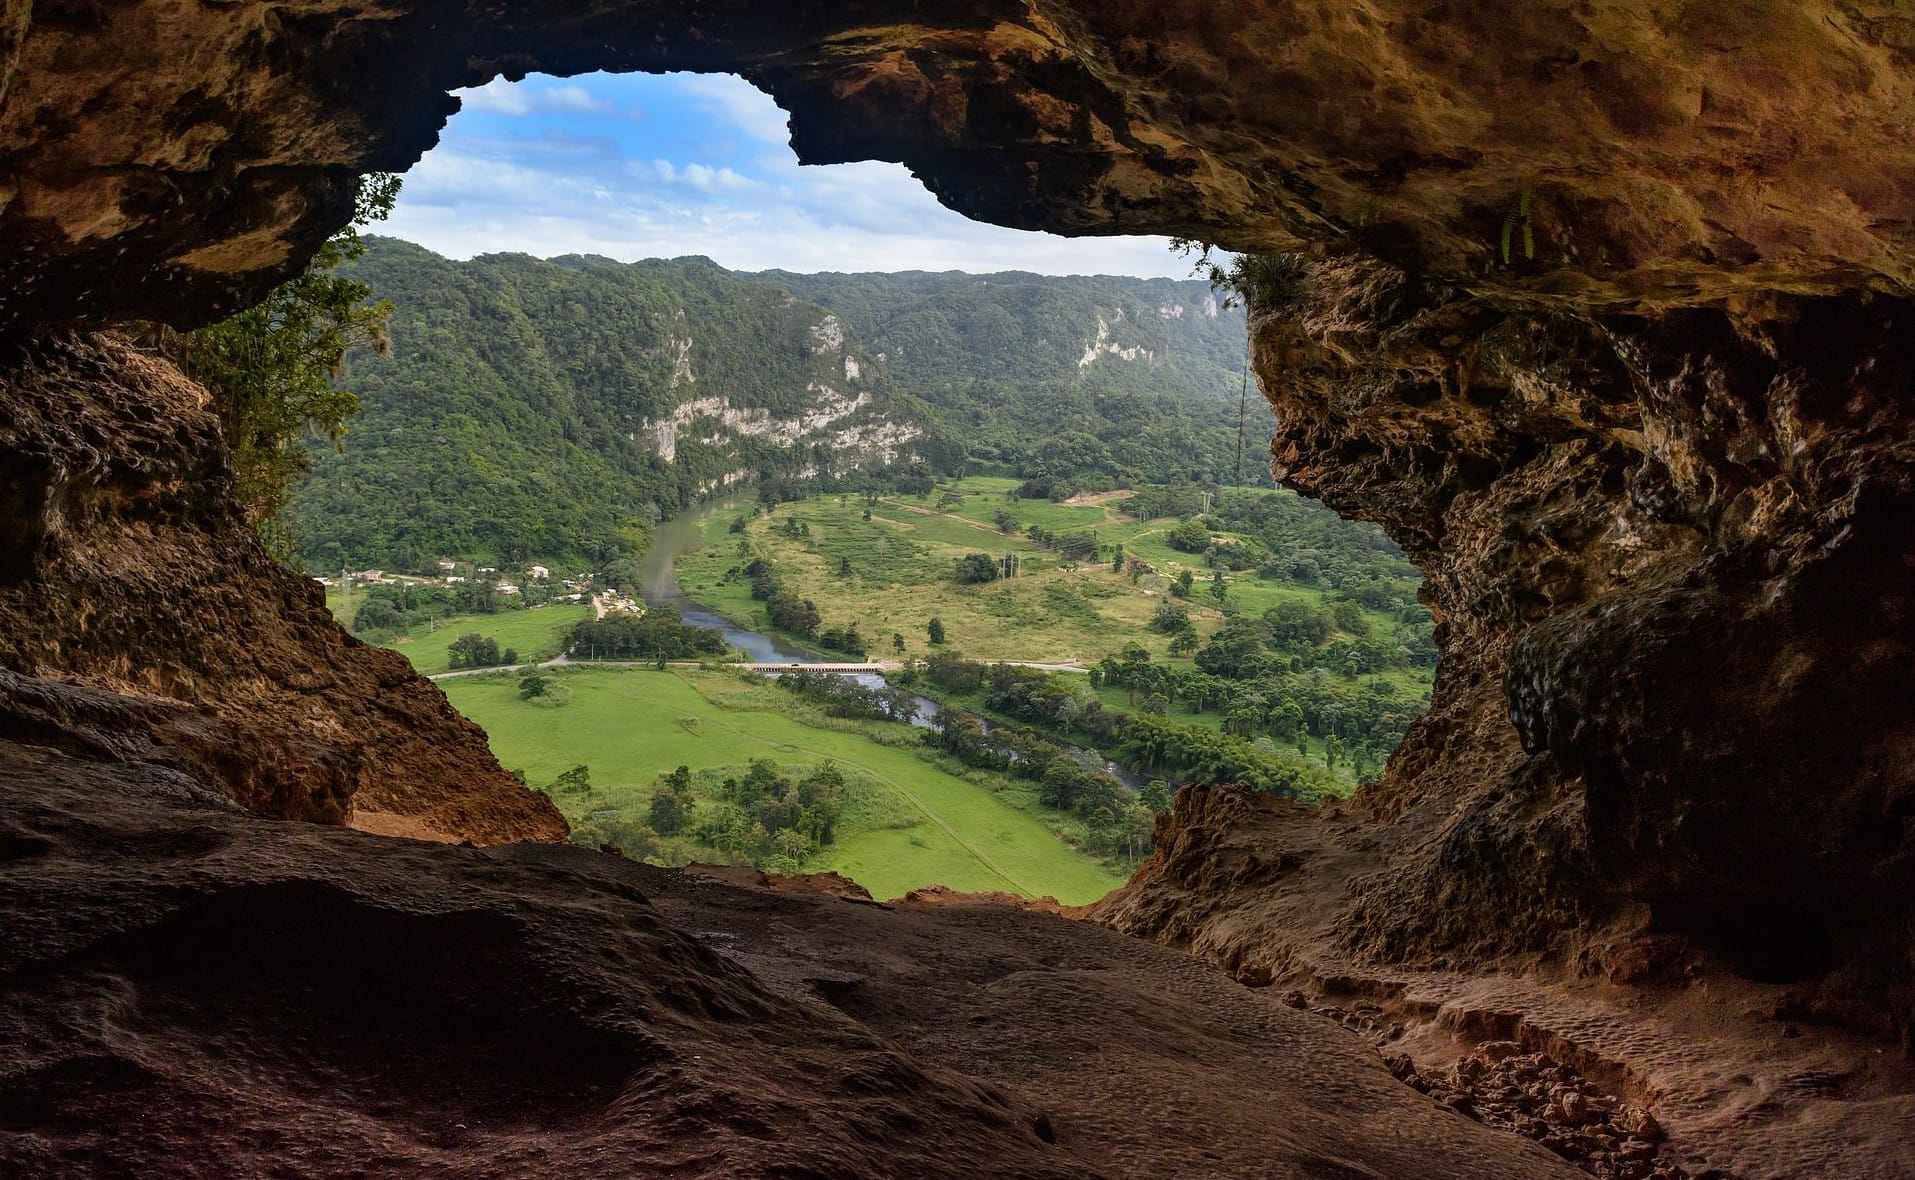 Puerto Cueva Ventana: Uncommon Attraction